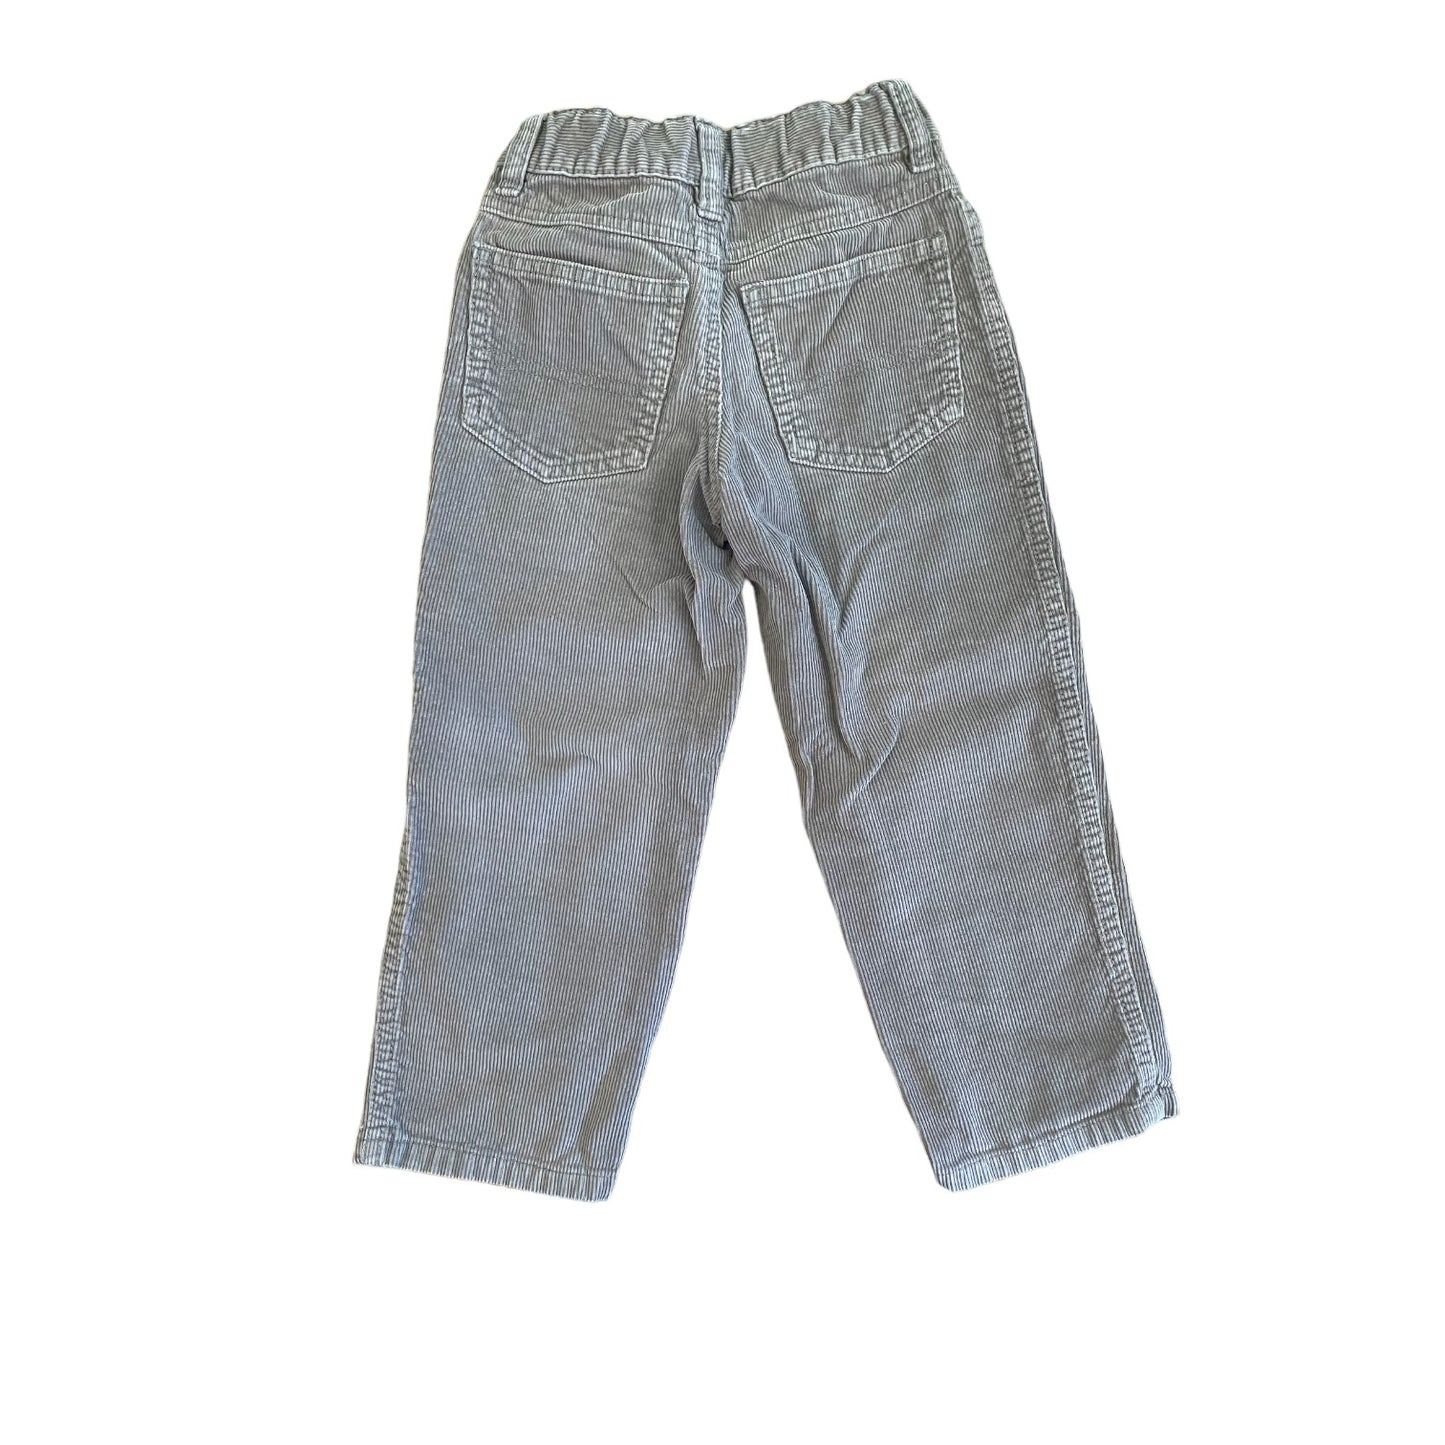 Gymboree Boys Corduroy Pants Size 4